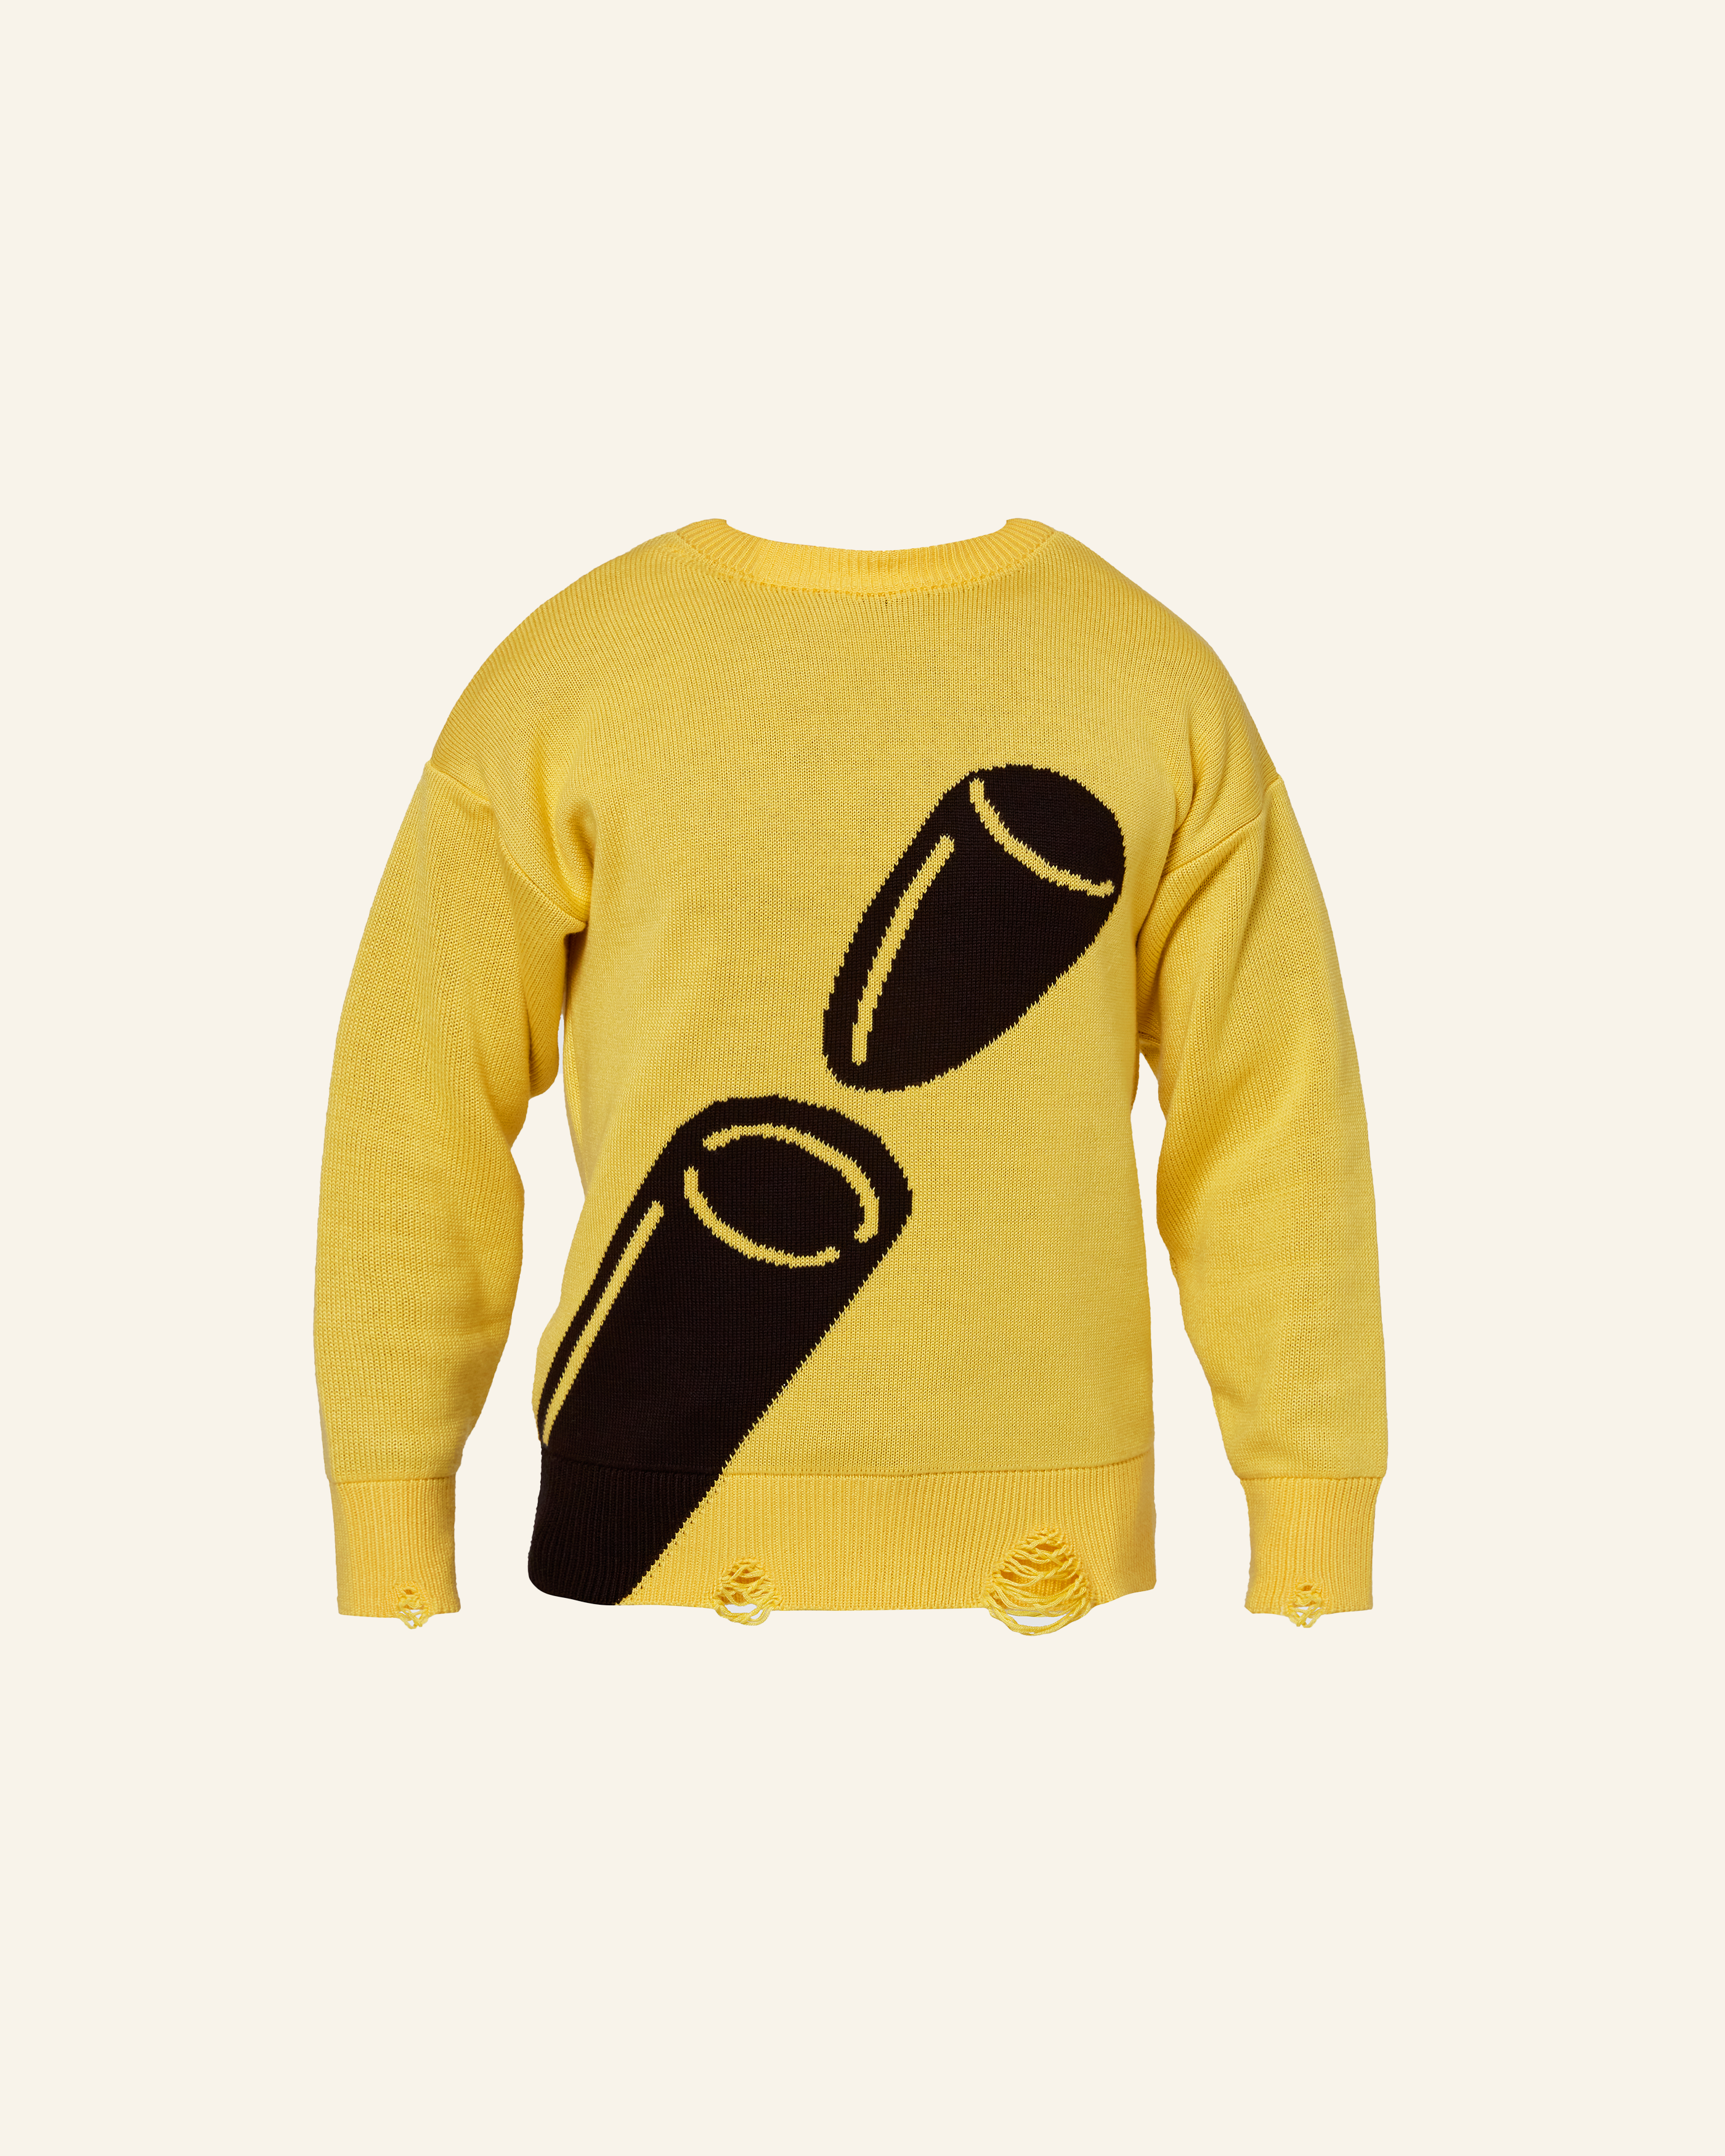 EGHO - Sweater Tricot Fukuda Amarelo